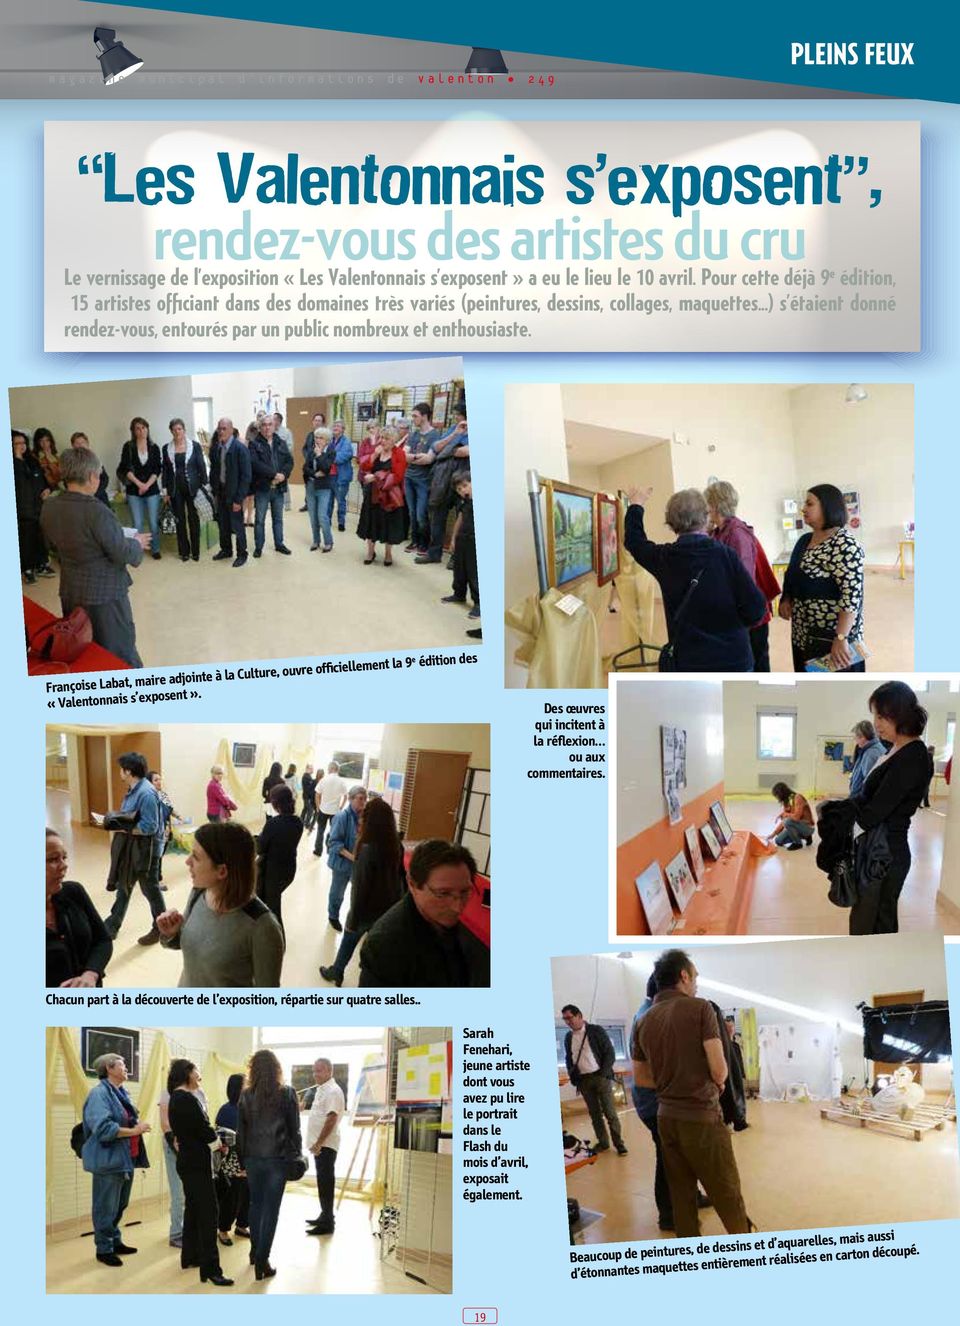 ..) s étaient donné rendez-vous, entourés par un public nombreux et enthousiaste. Françoise Labat, maire adjointe à la Culture, ouvre officiellement la 9 e édition des «Valentonnais s exposent».